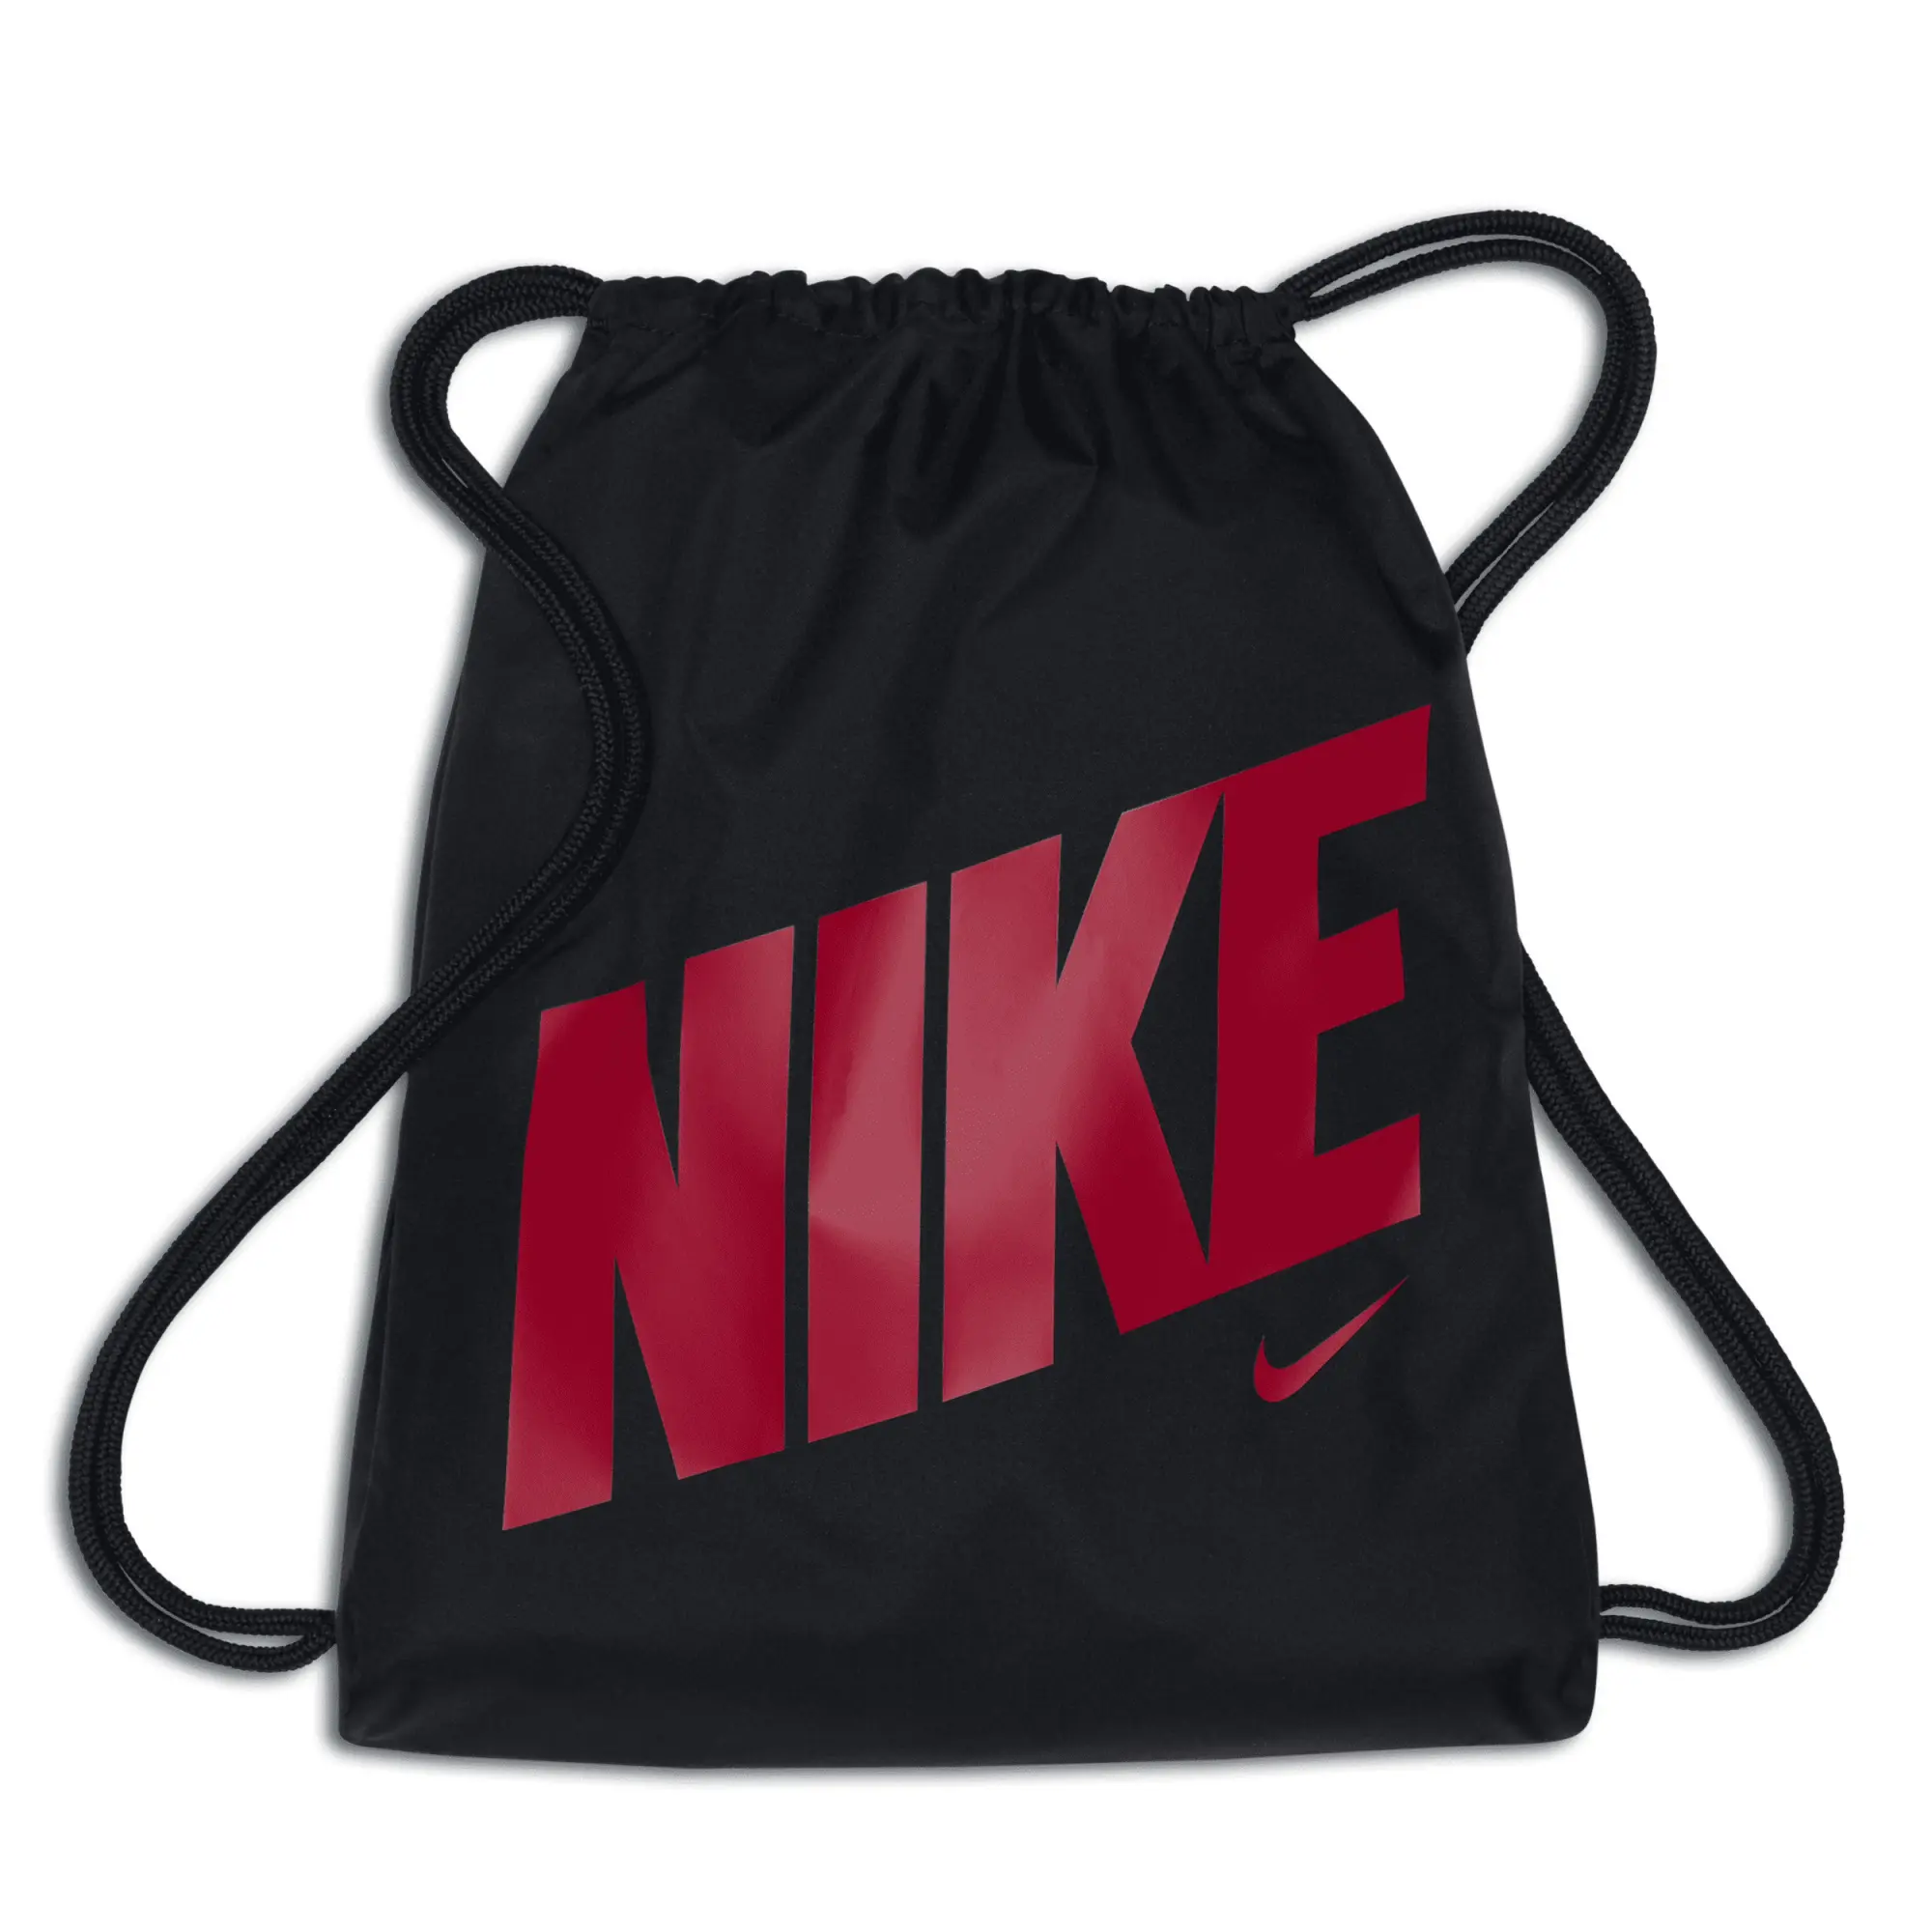 Nike Graphic Drawstring Bag  - Black